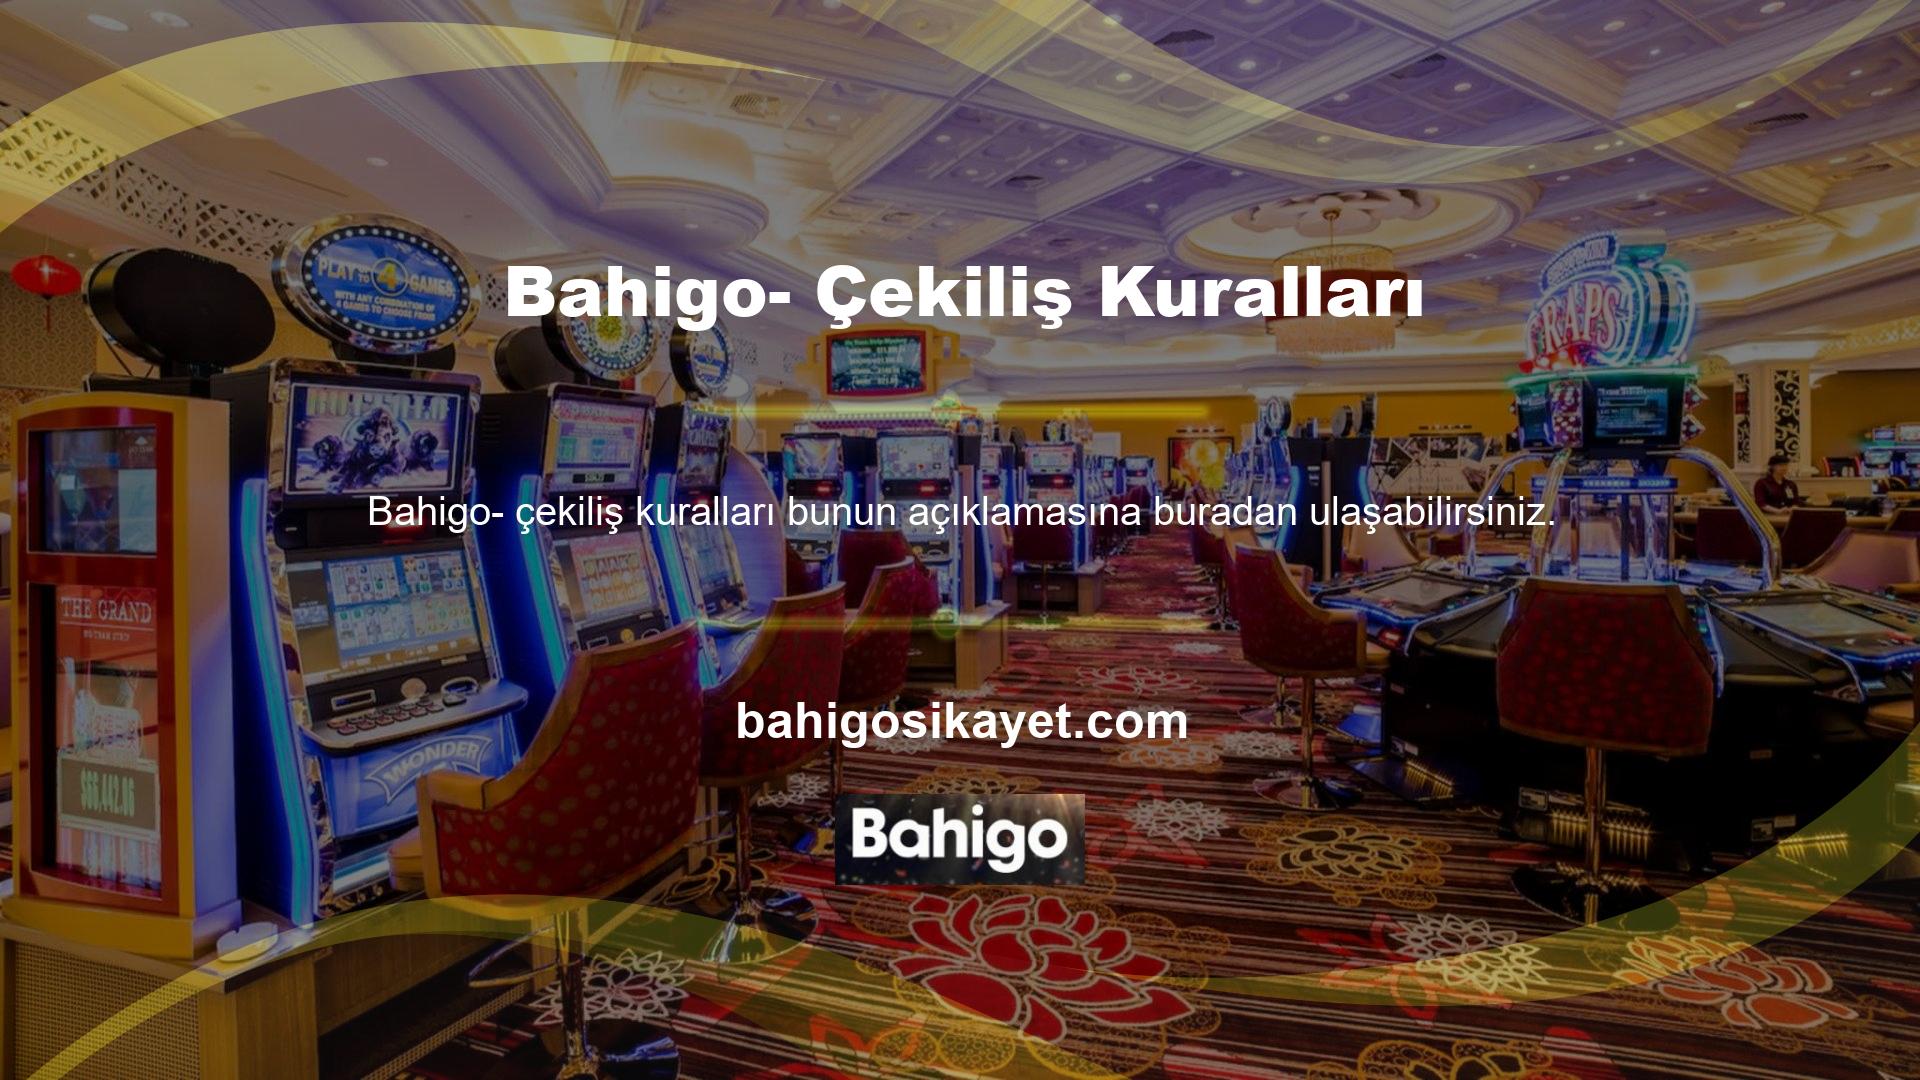 Bahigo sitesi kullanıcıları 24 saat içerisinde istekleri doğrultusunda üç adet para çekme talimatı verebilirler